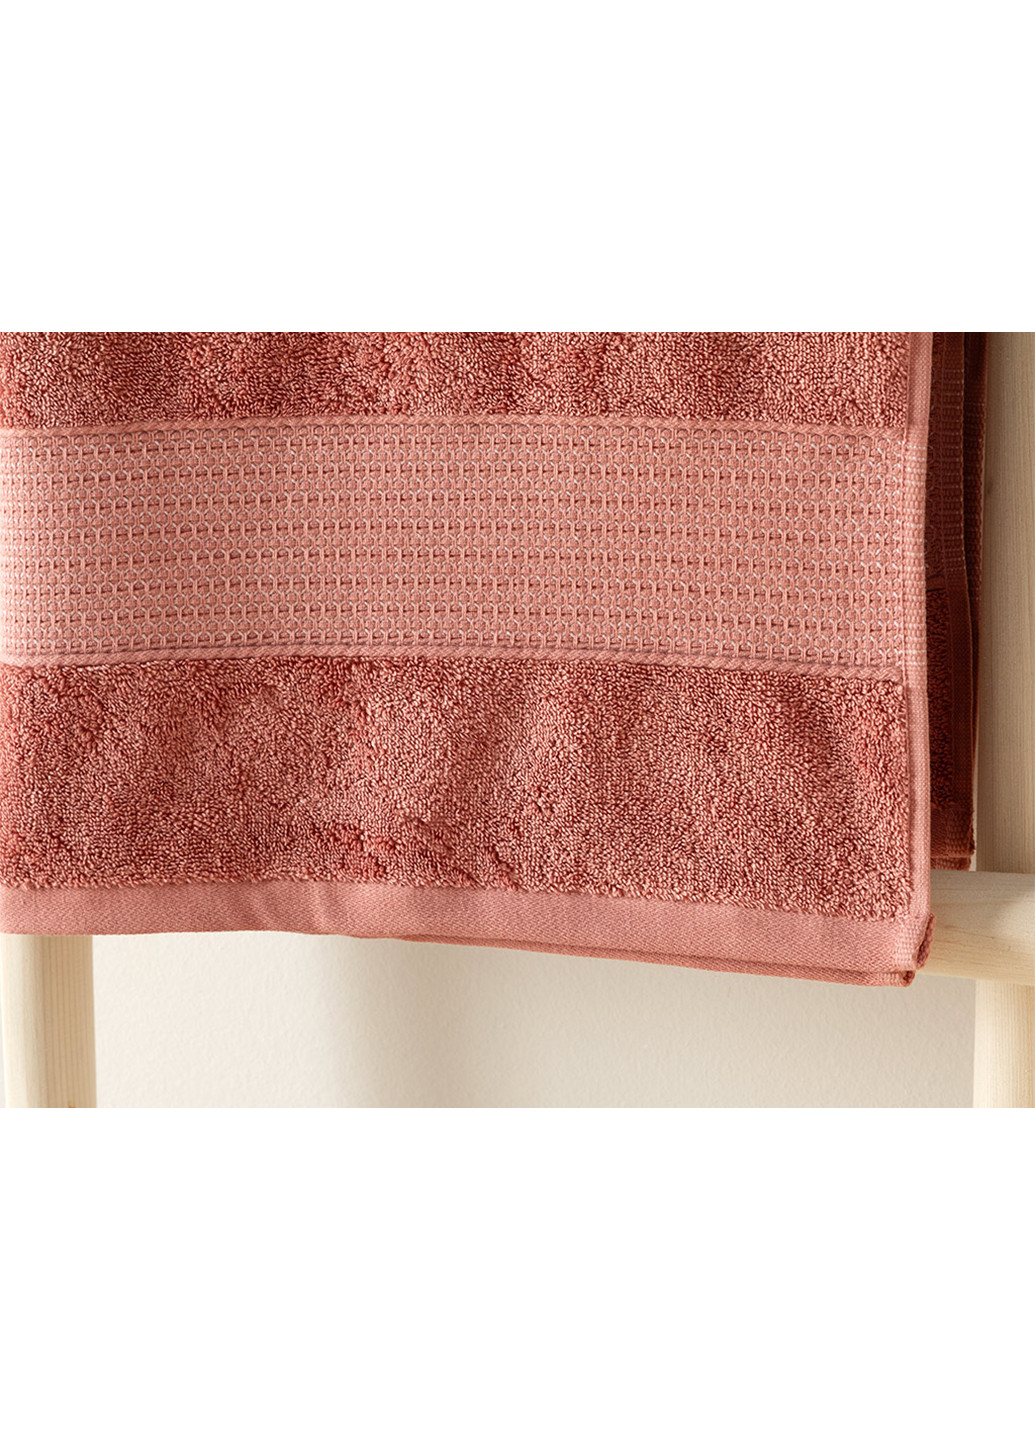 English Home полотенце, 90х150 см однотонный розовый производство - Турция